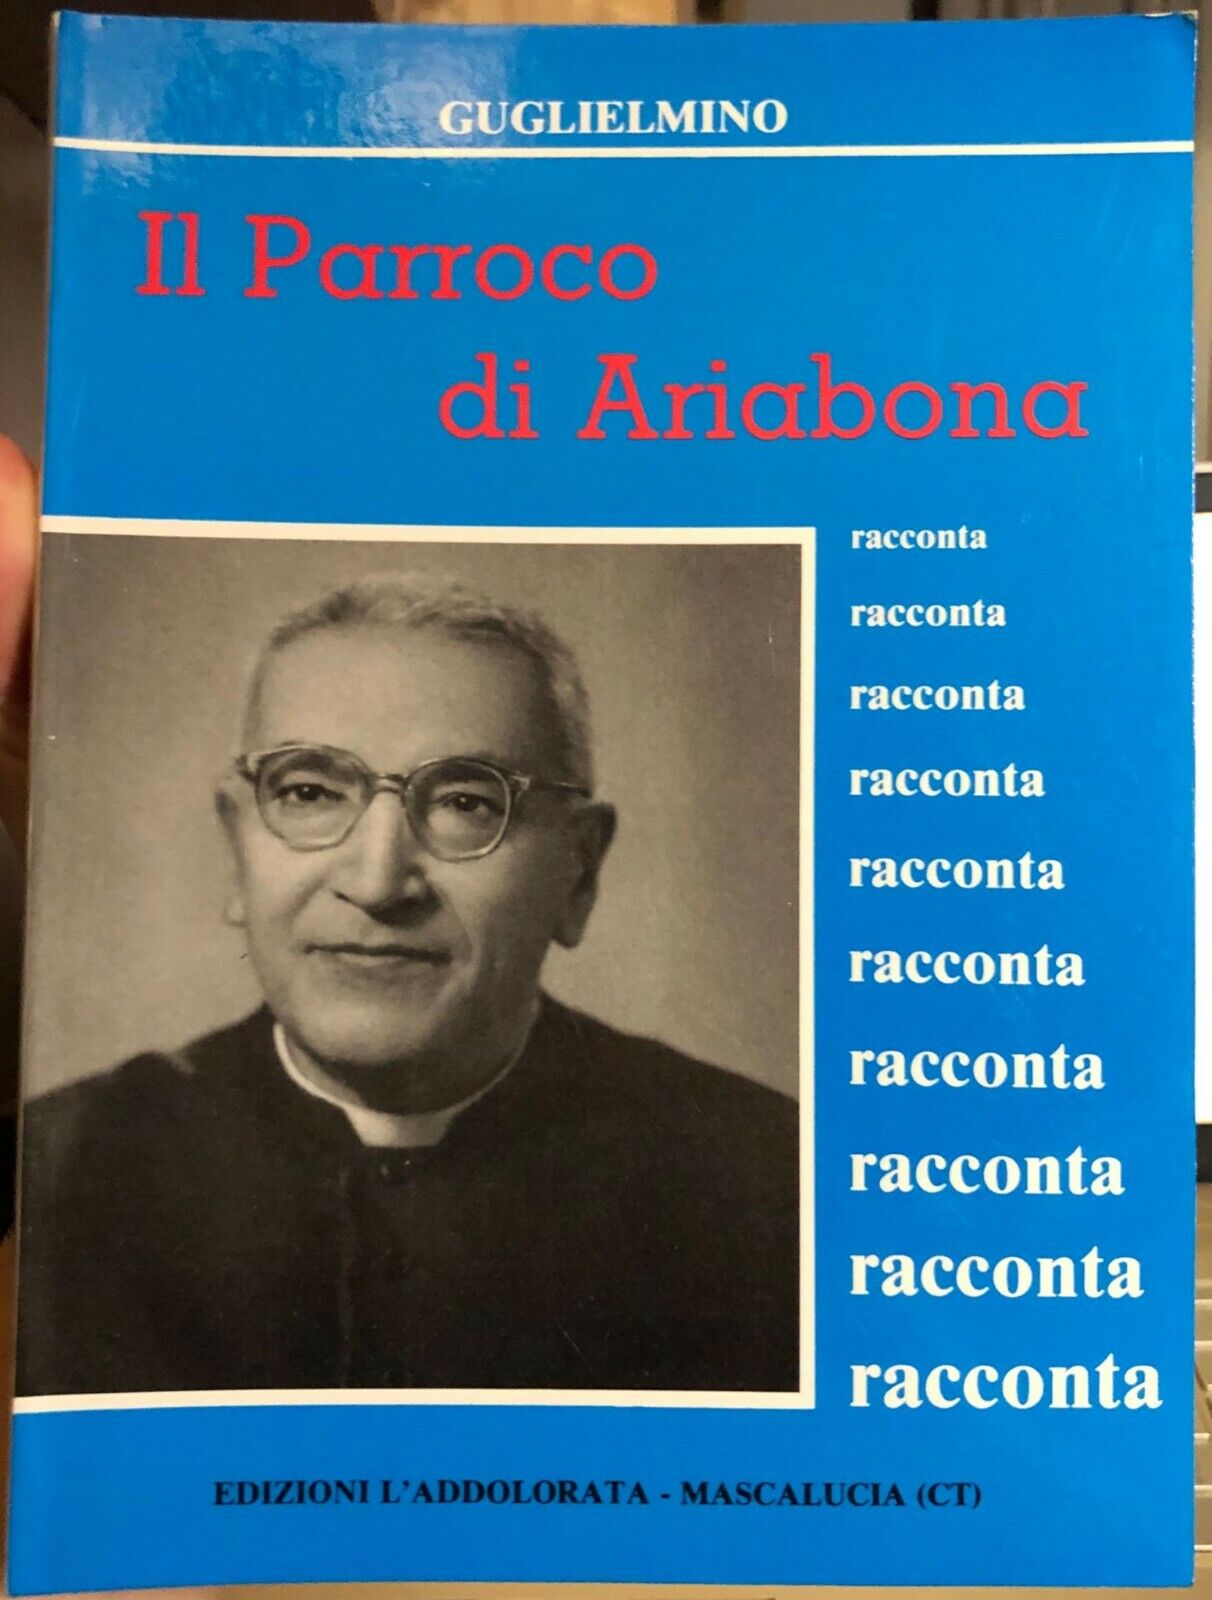 Il Parroco di Ariabona racconta di Mons. Guglielmino Gioacchino,  1989,  Edizion